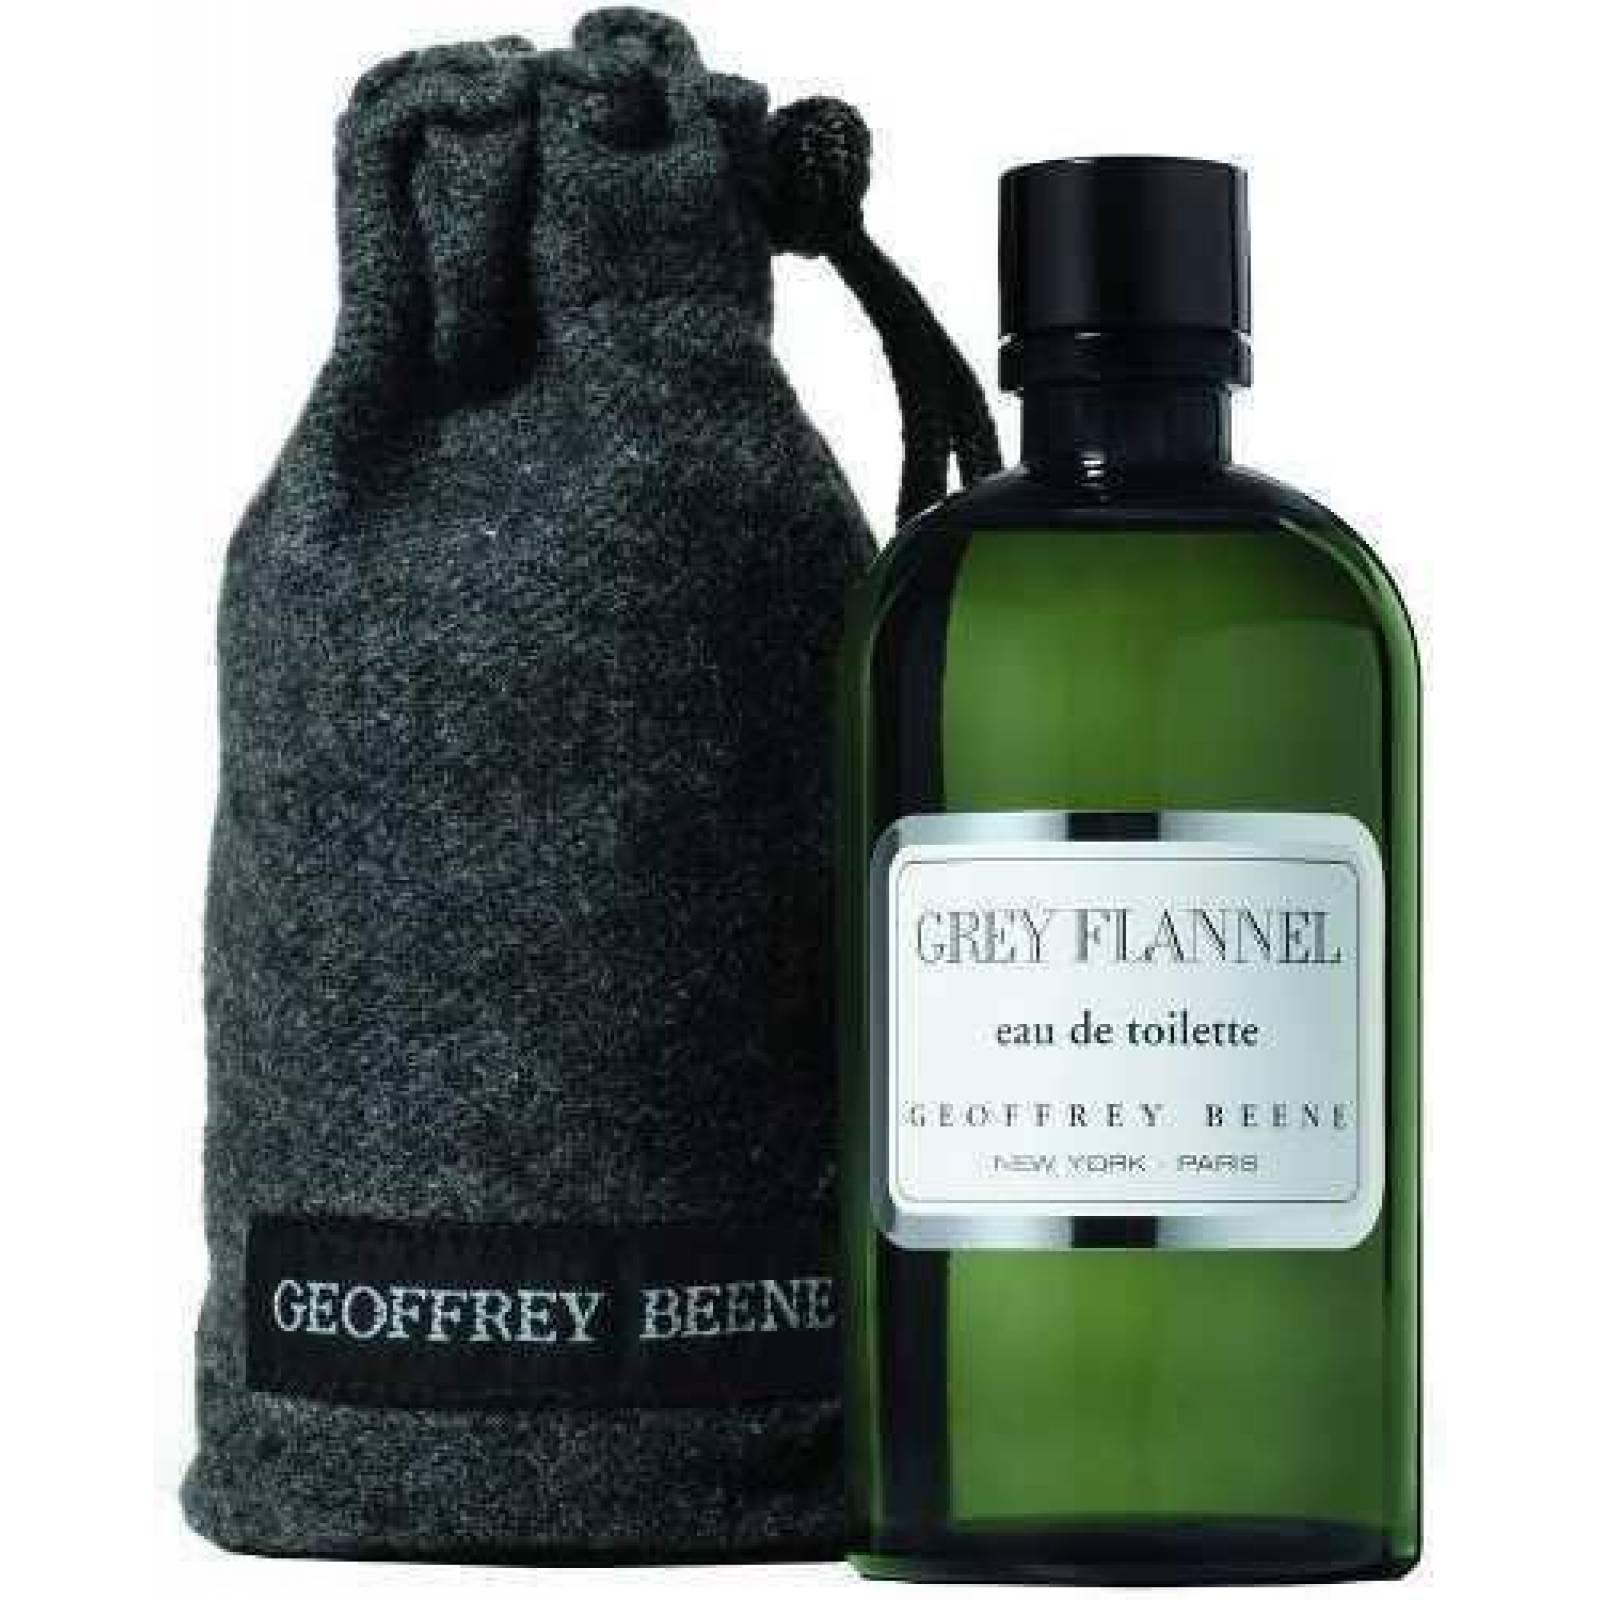 Grey Flannel Caballero 240 Ml Geoffrey Beene - Original